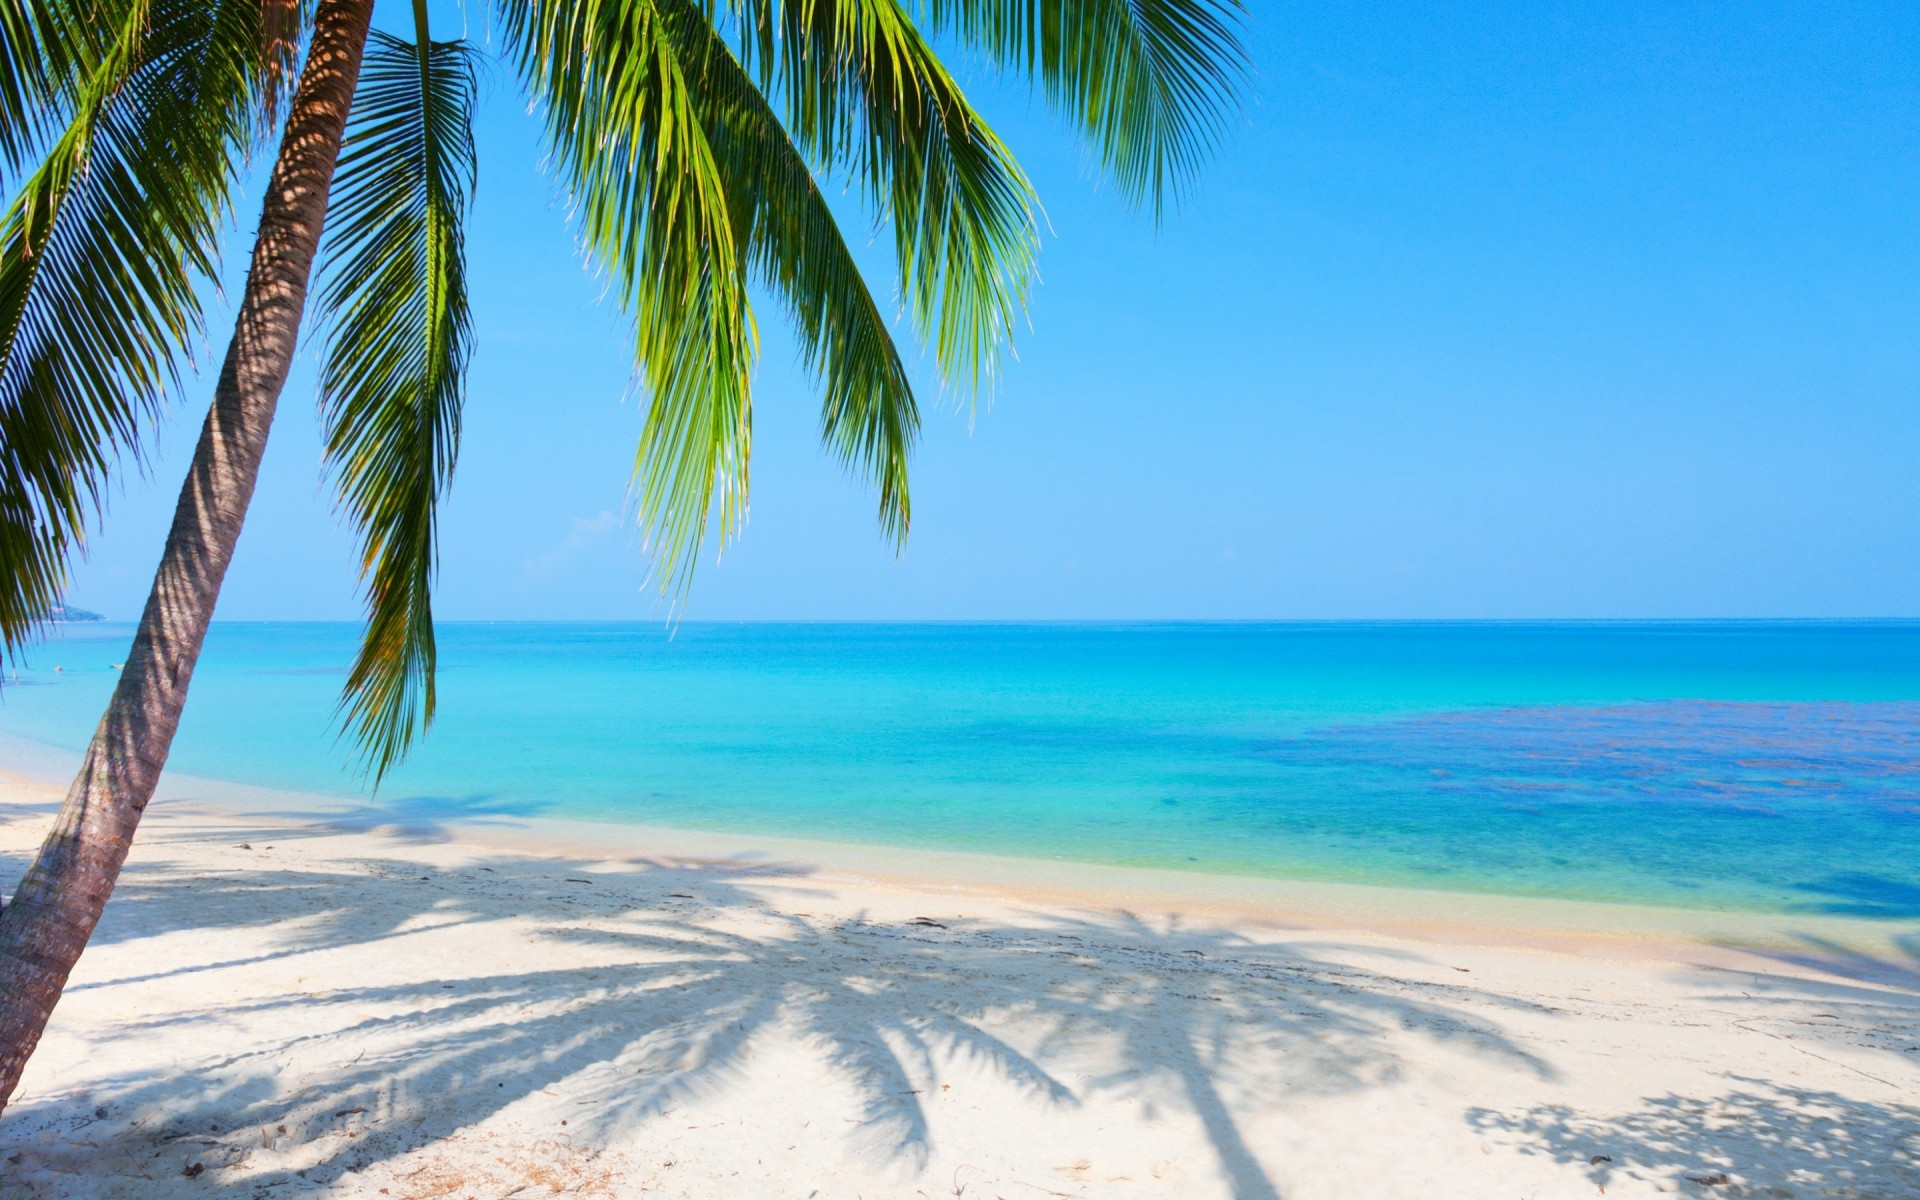 пейзажи песок тропический пляж моря идиллия лето океан остров рай воды путешествия отпуск пейзаж солнце бирюза экзотические курорт релаксация ладони кокосовое пальмы море пейзаж